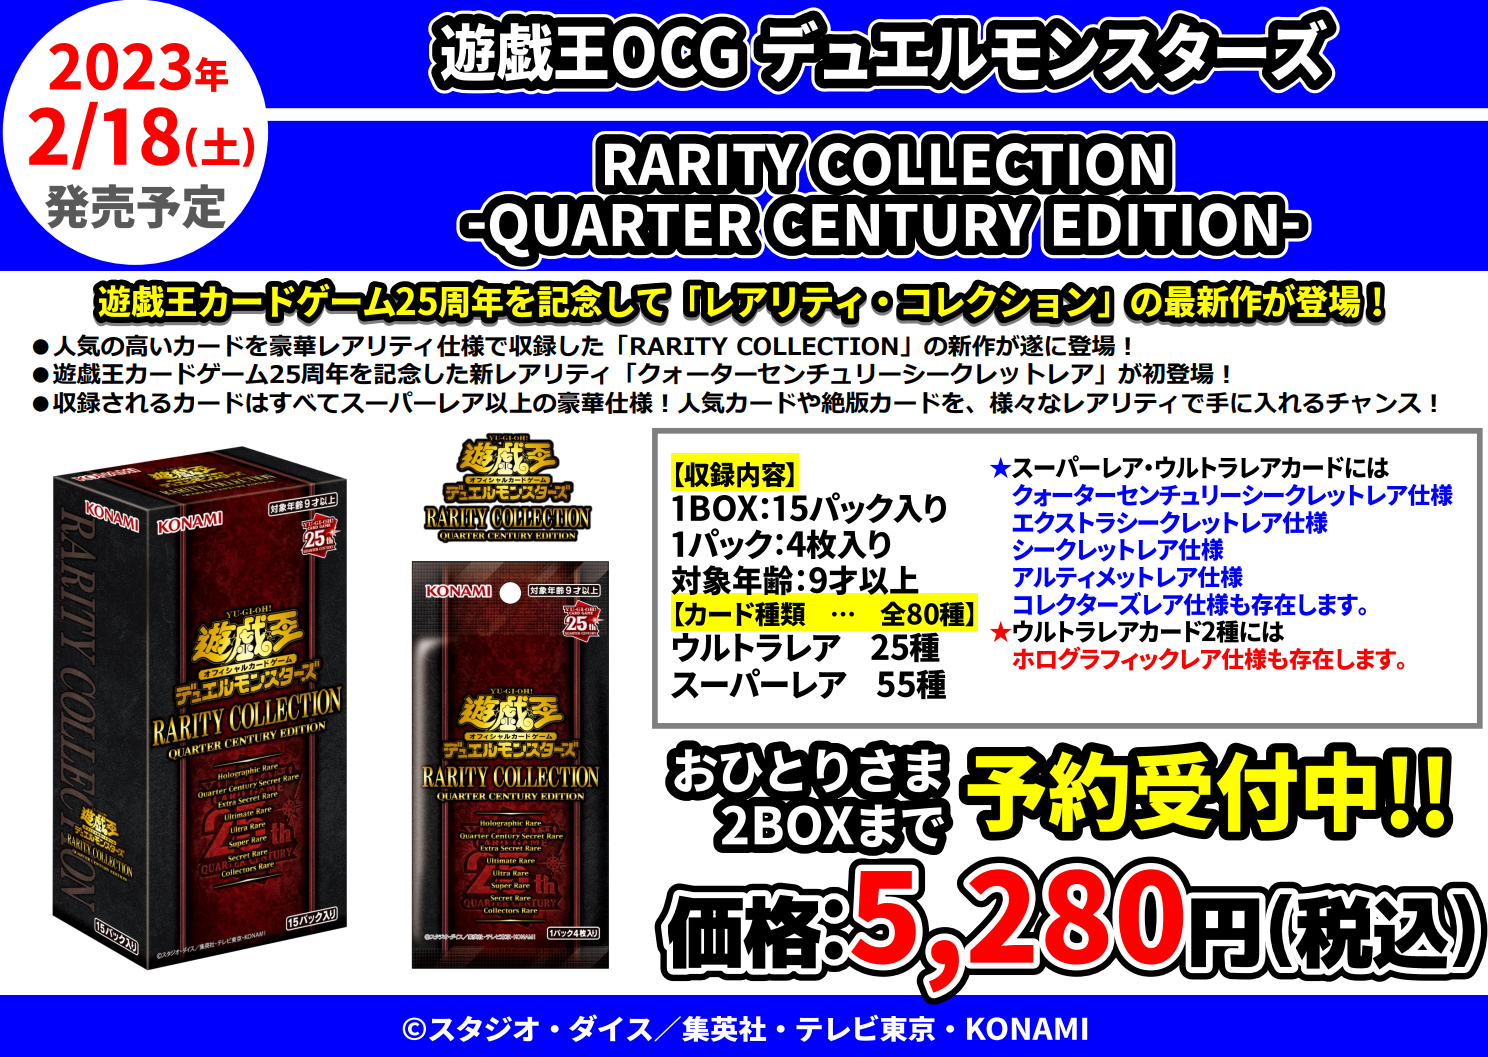 遊戯王OCG RARITY COLLECTION - QUARTER CENTURY EDITION - 抽選受付